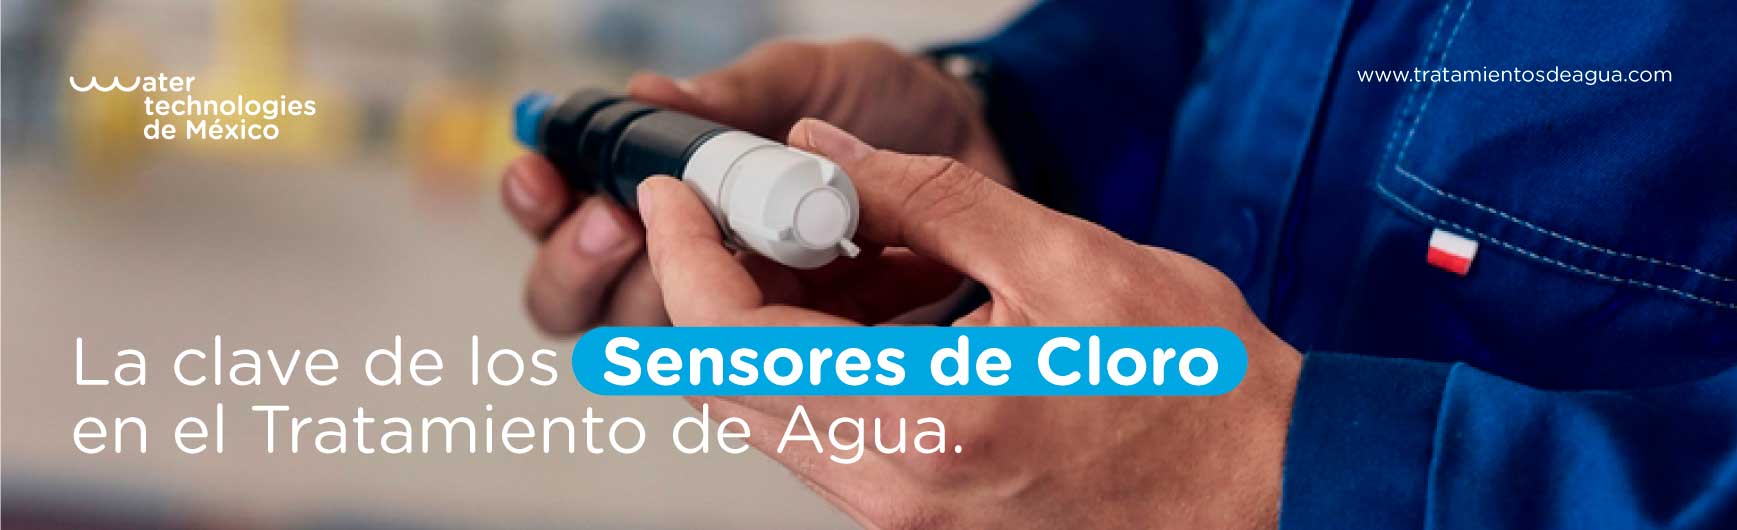 La clave de los Sensores de Cloro en el Tratamiento de Agua.